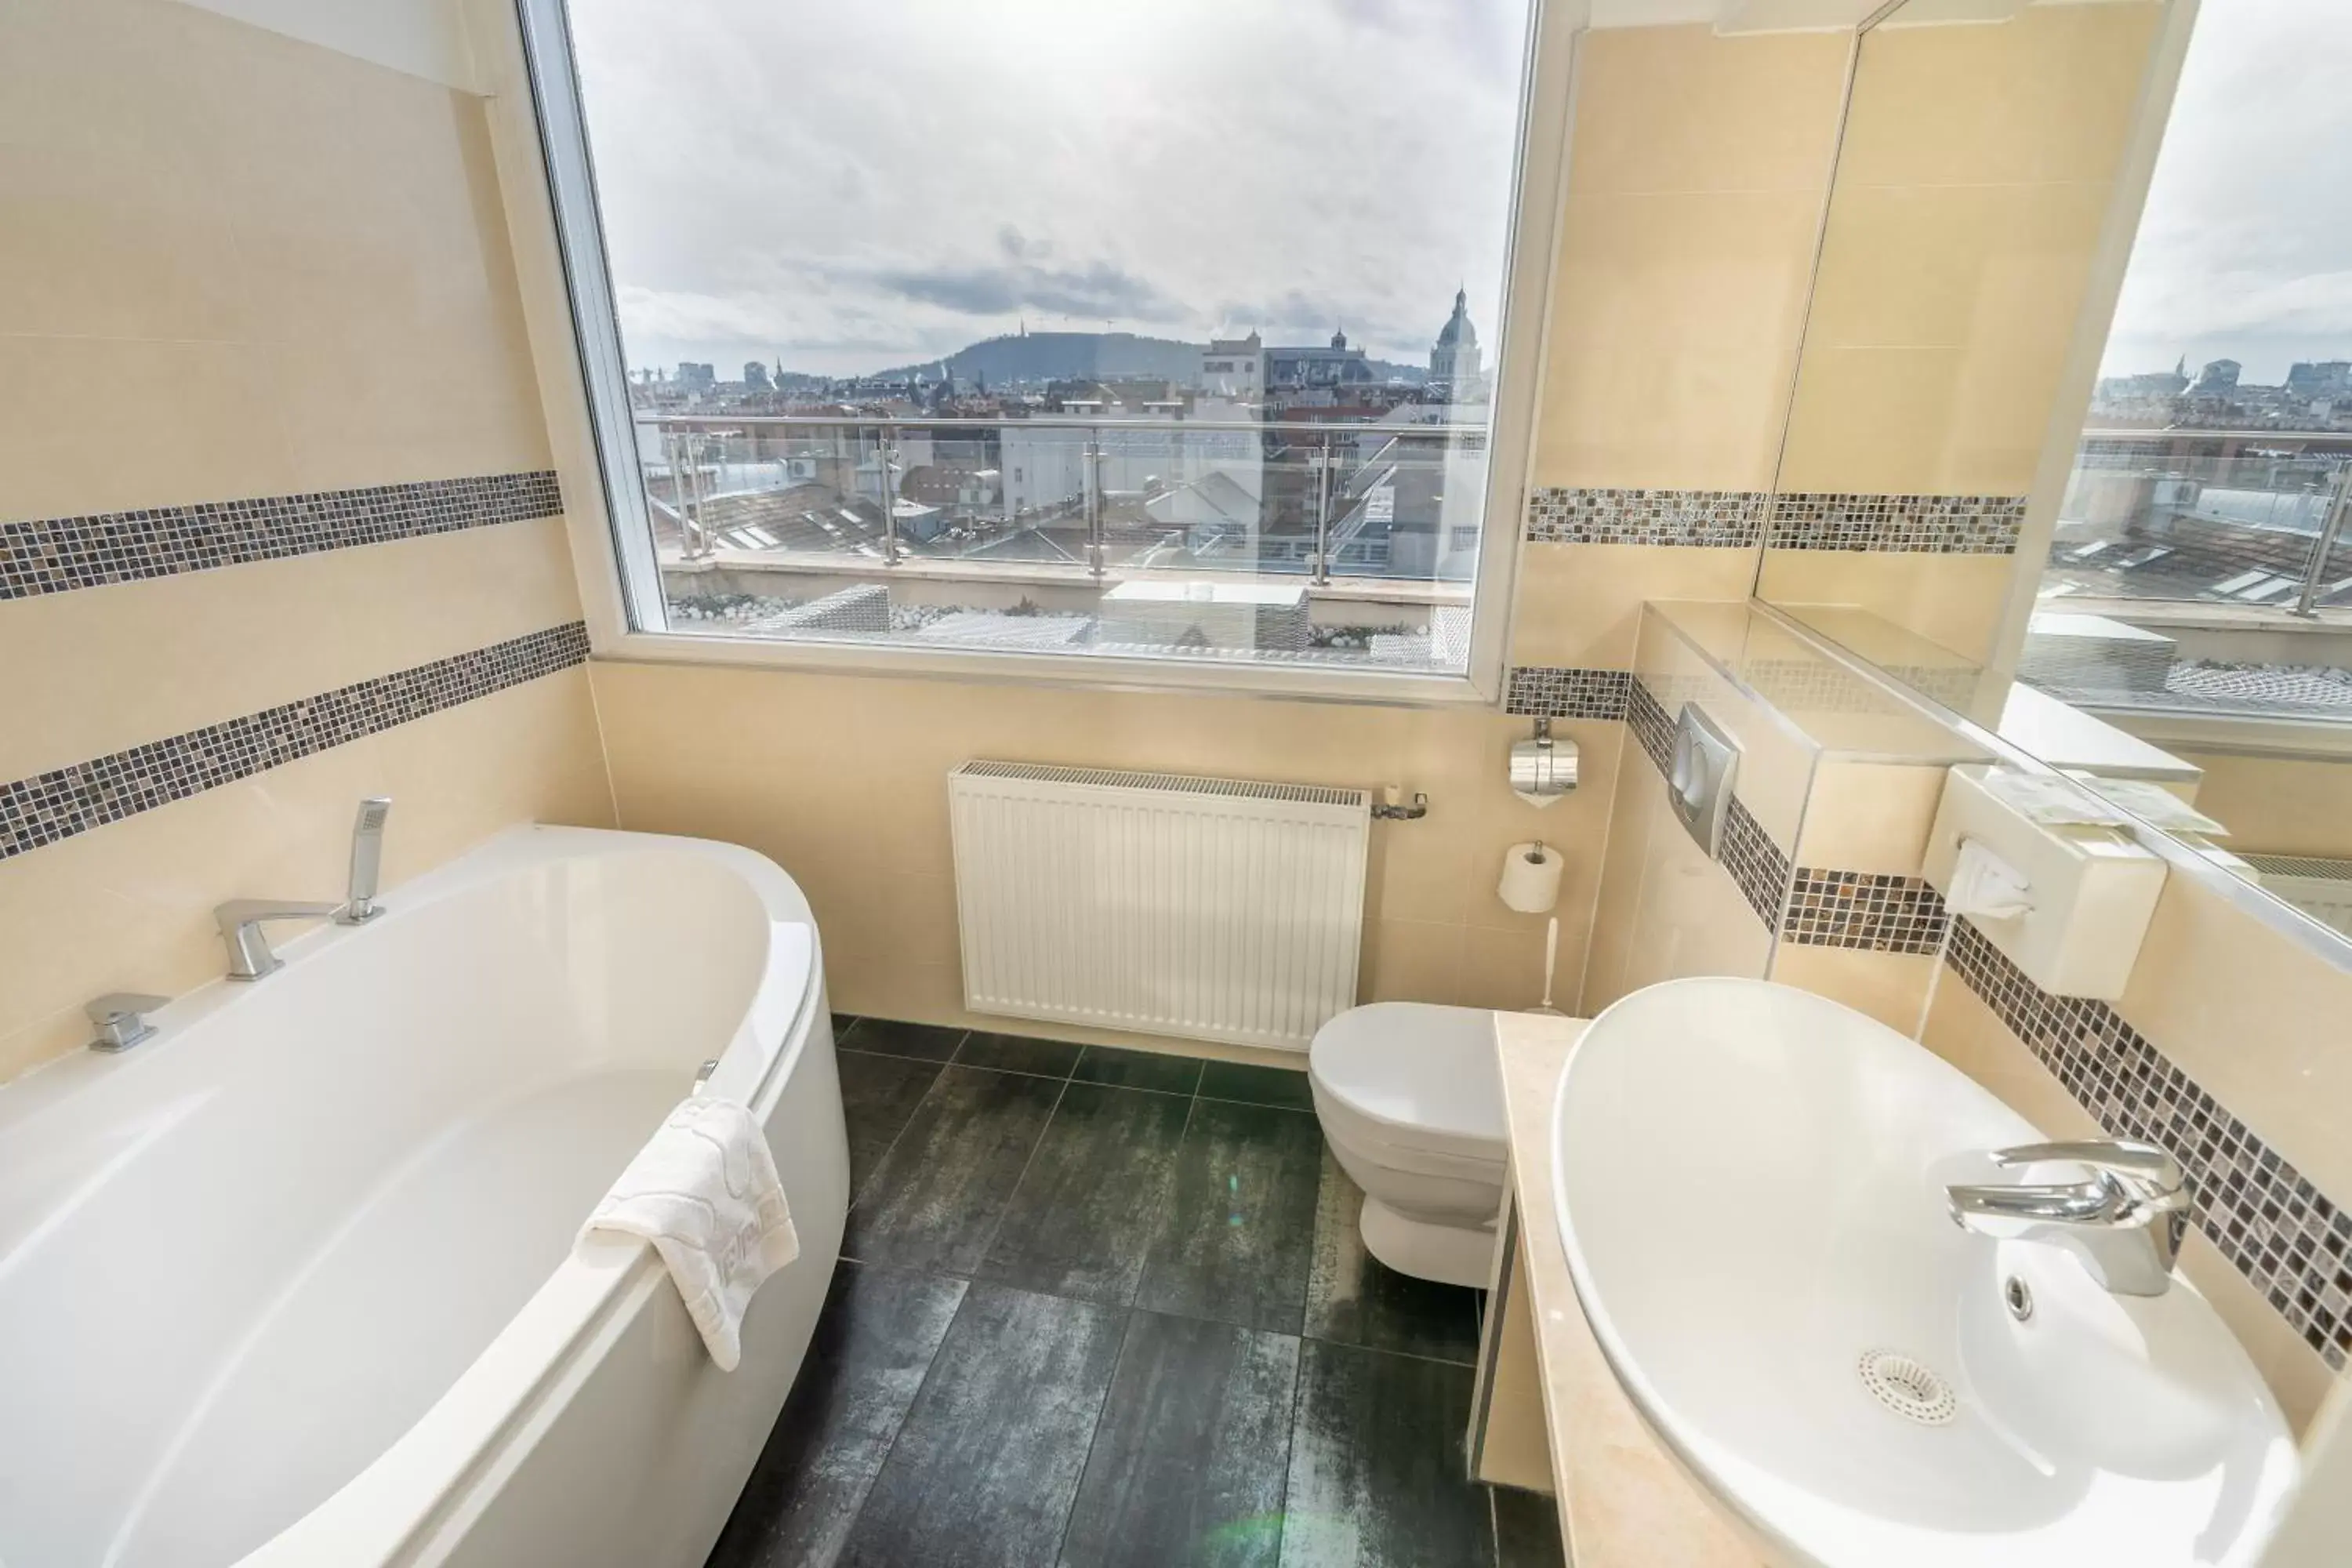 Bathroom in Medos Hotel